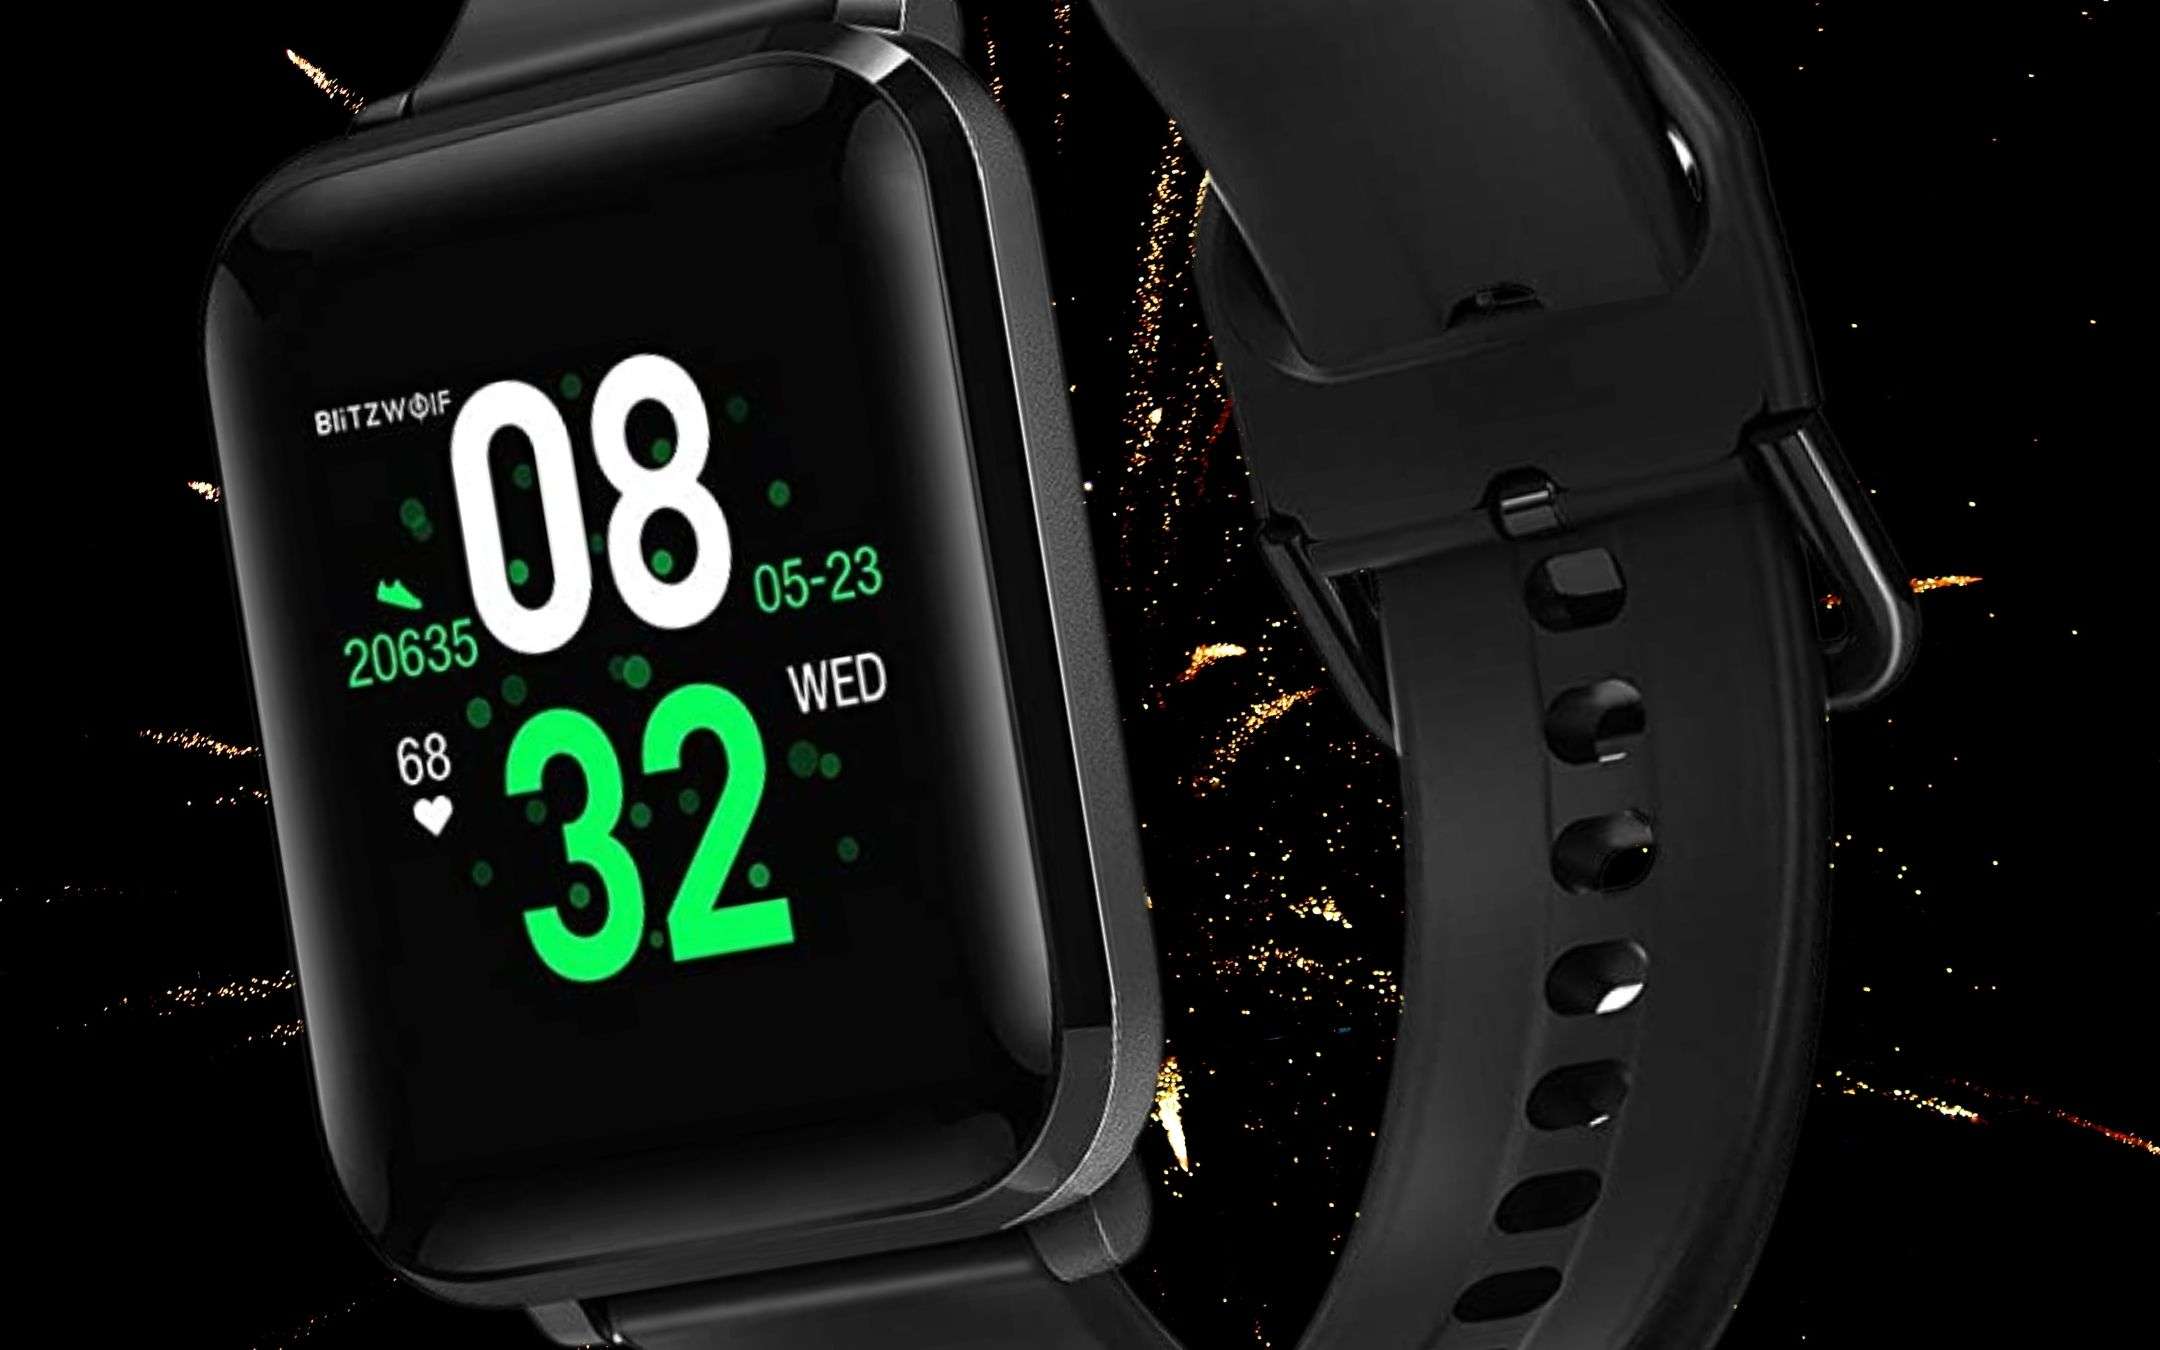 Smartwatch a prezzo shock per capodanno (22€)